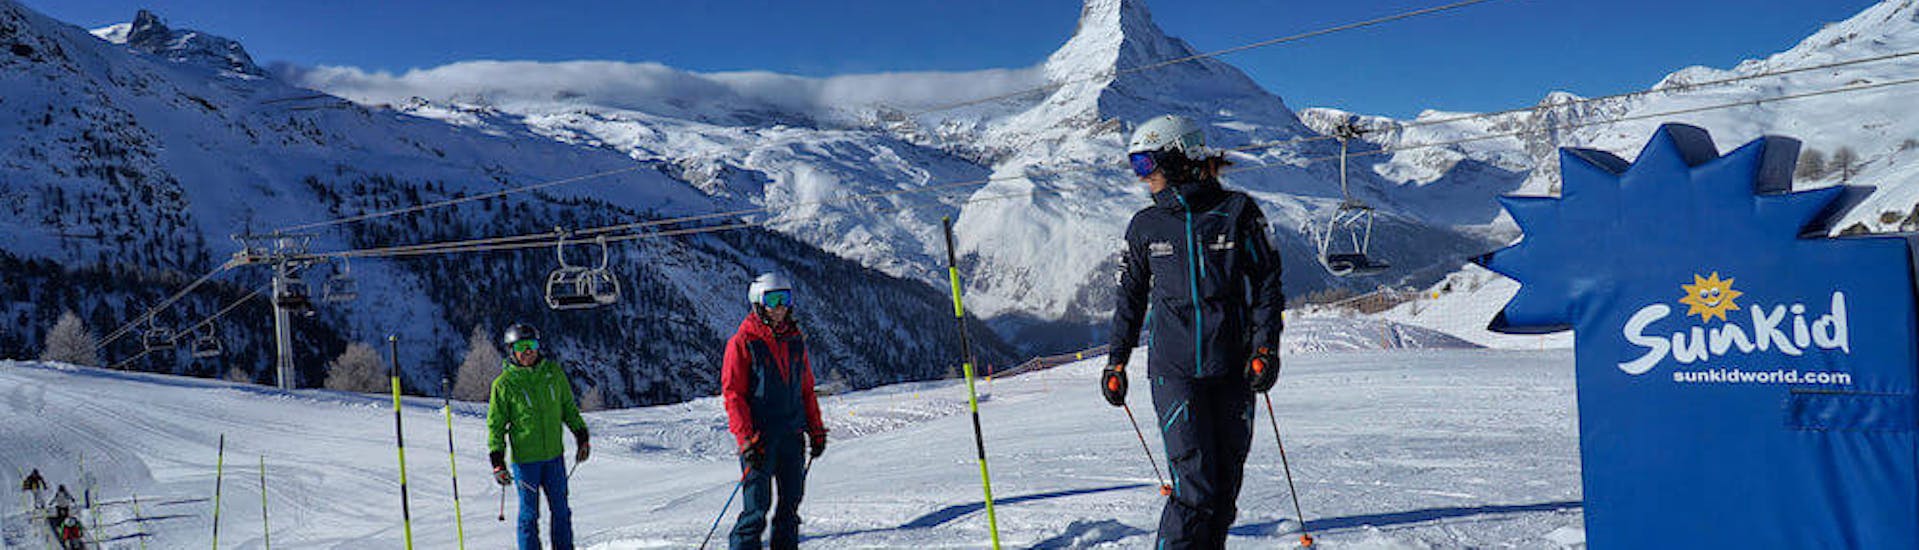 Maestro di sci e studenti che salgono sul tappeto magico durante le lezioni private di sci per principianti - 3 giorni con la Stocked Snowsports School Zermatt.